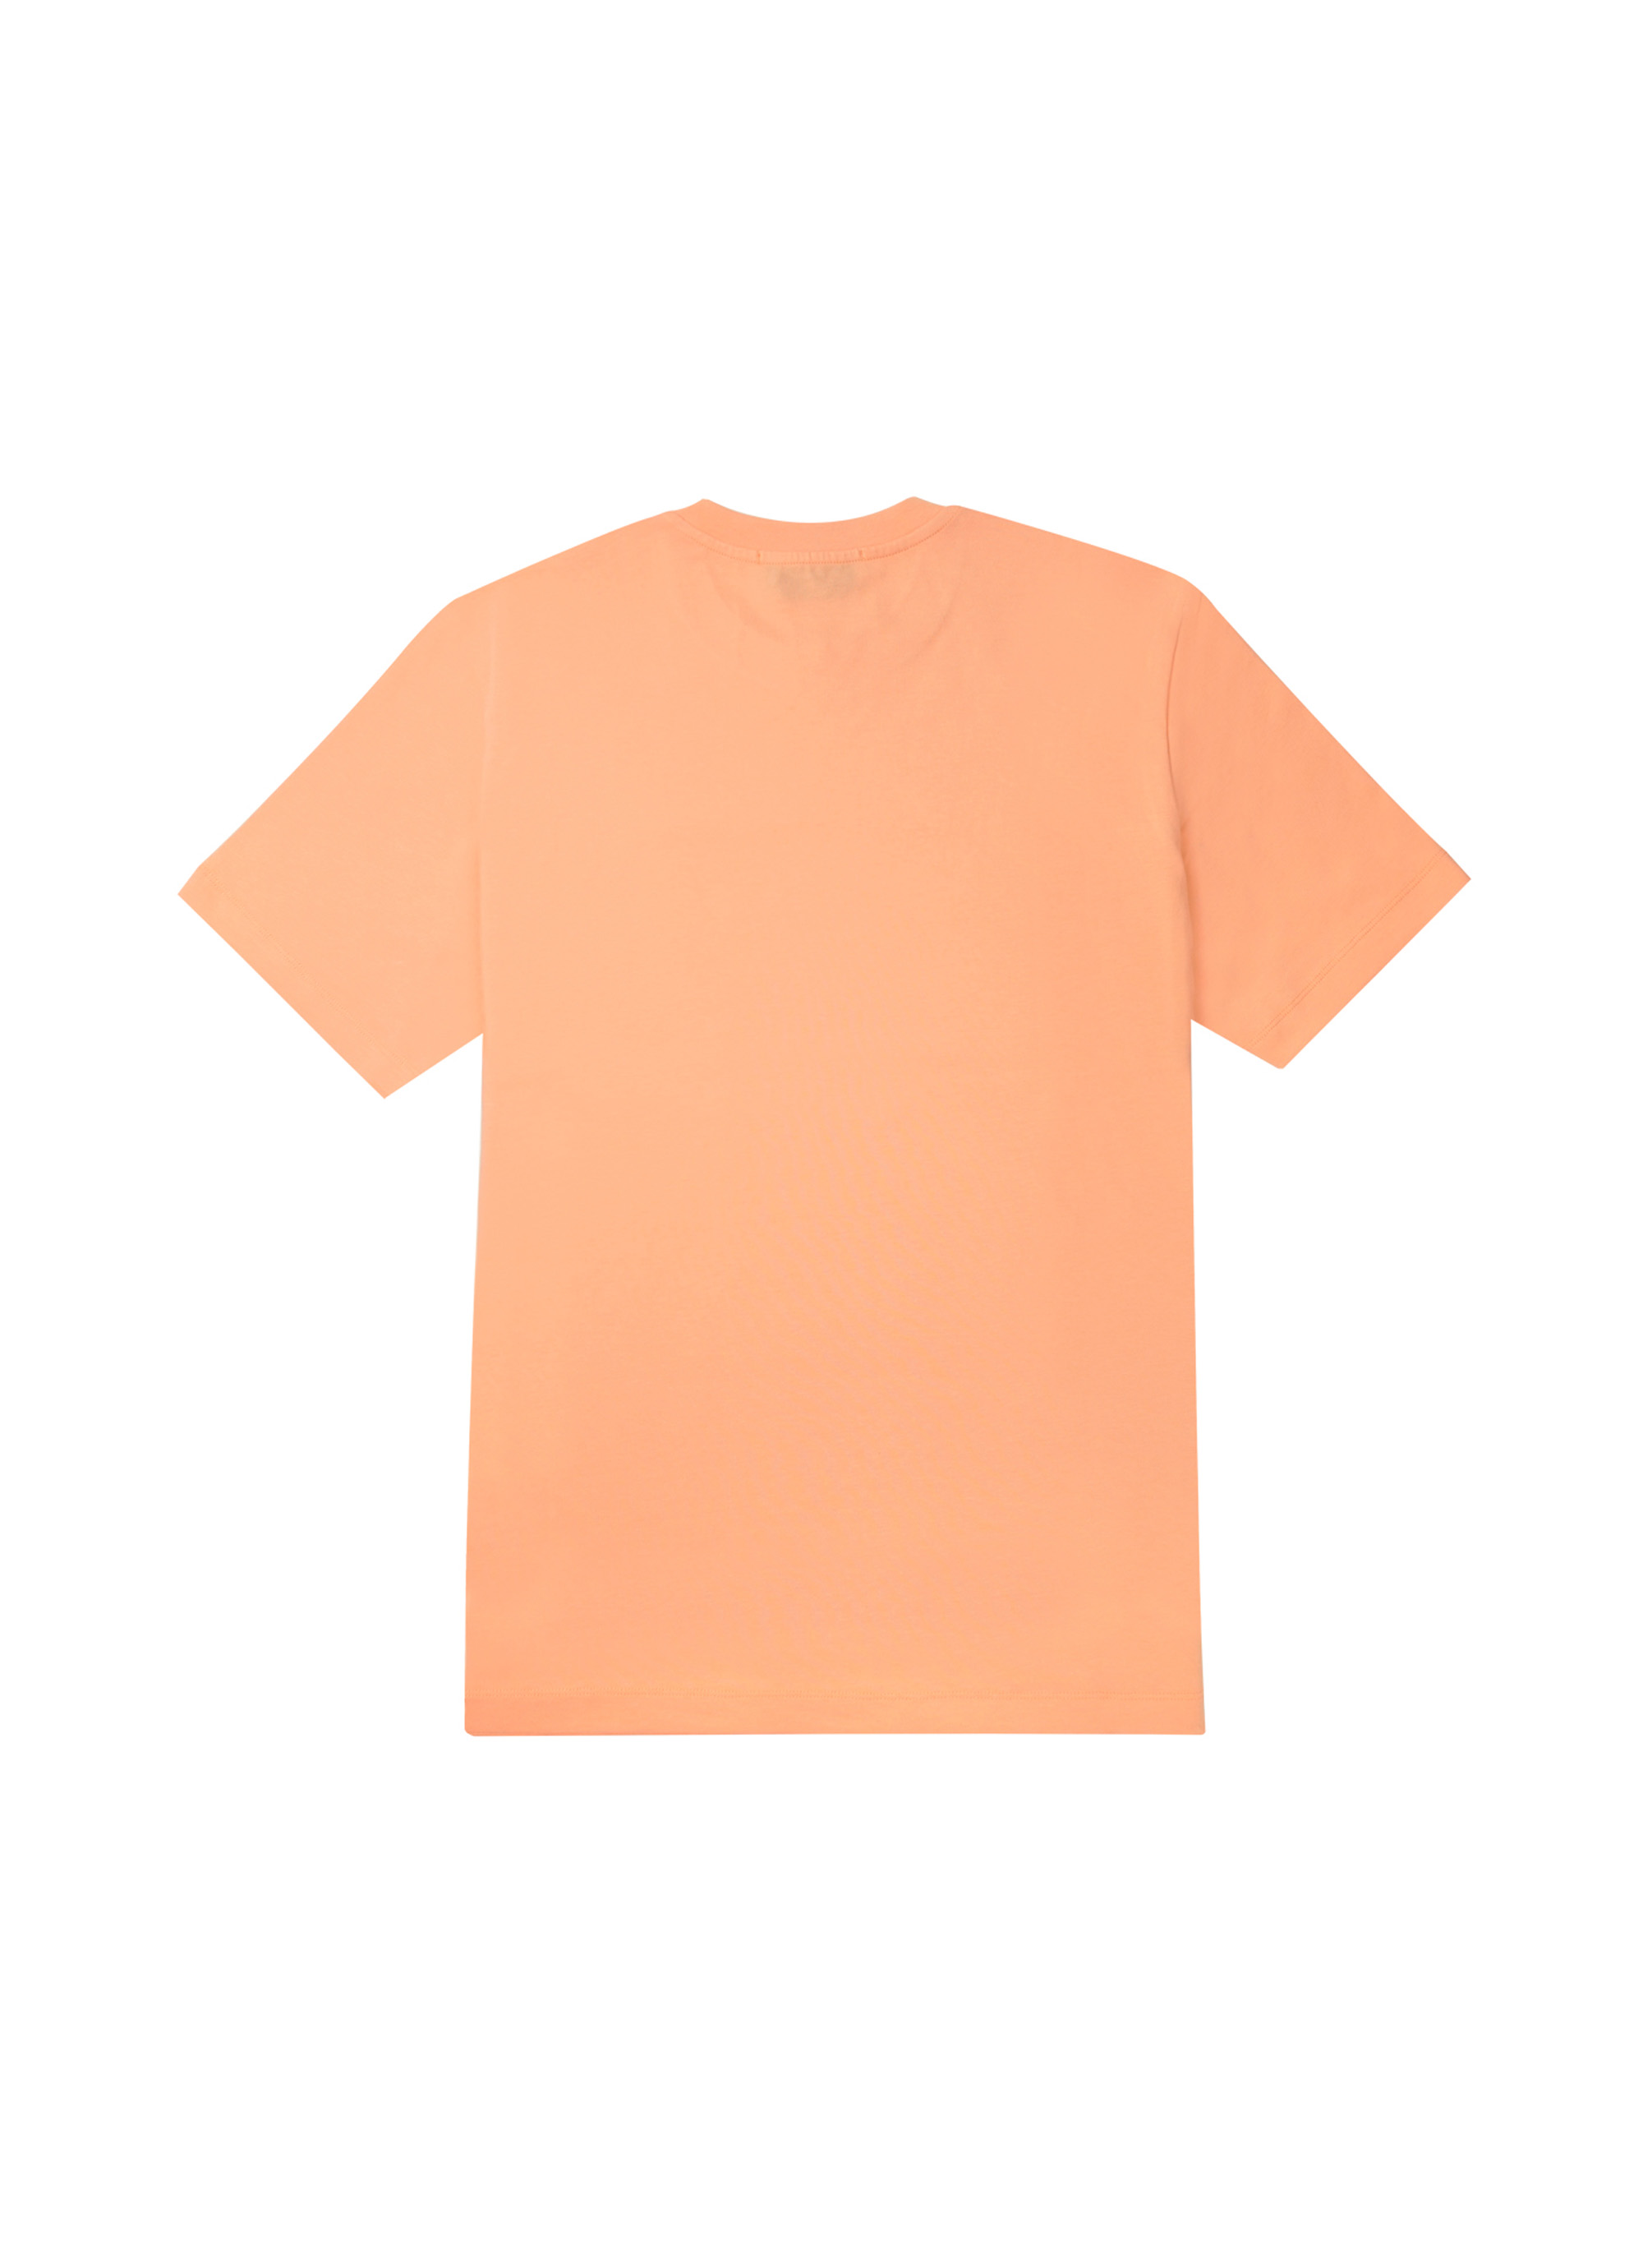 【NEW】ブラッシュロゴTシャツ 詳細画像 オレンジ 2